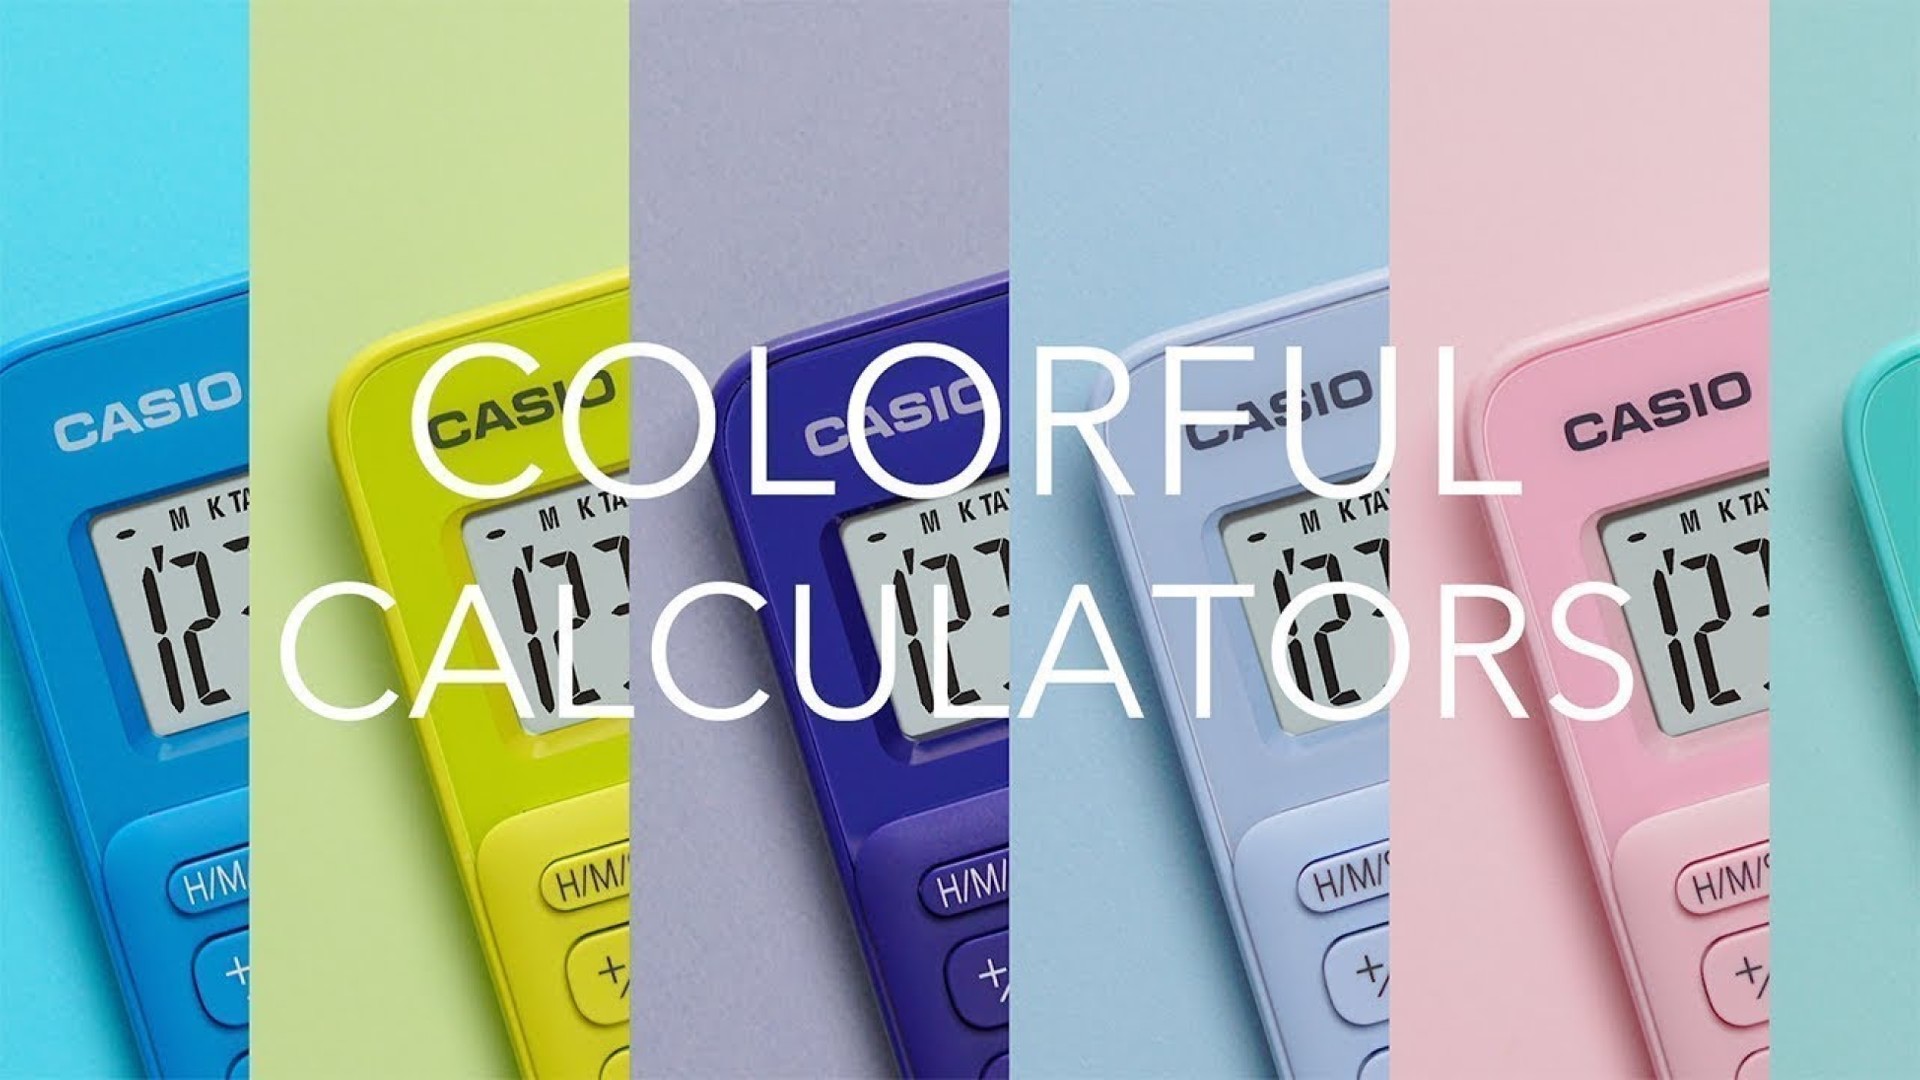 Casio lança linha Calculadoras Fashion, uma edição limitada com design exclusivo no Brasil